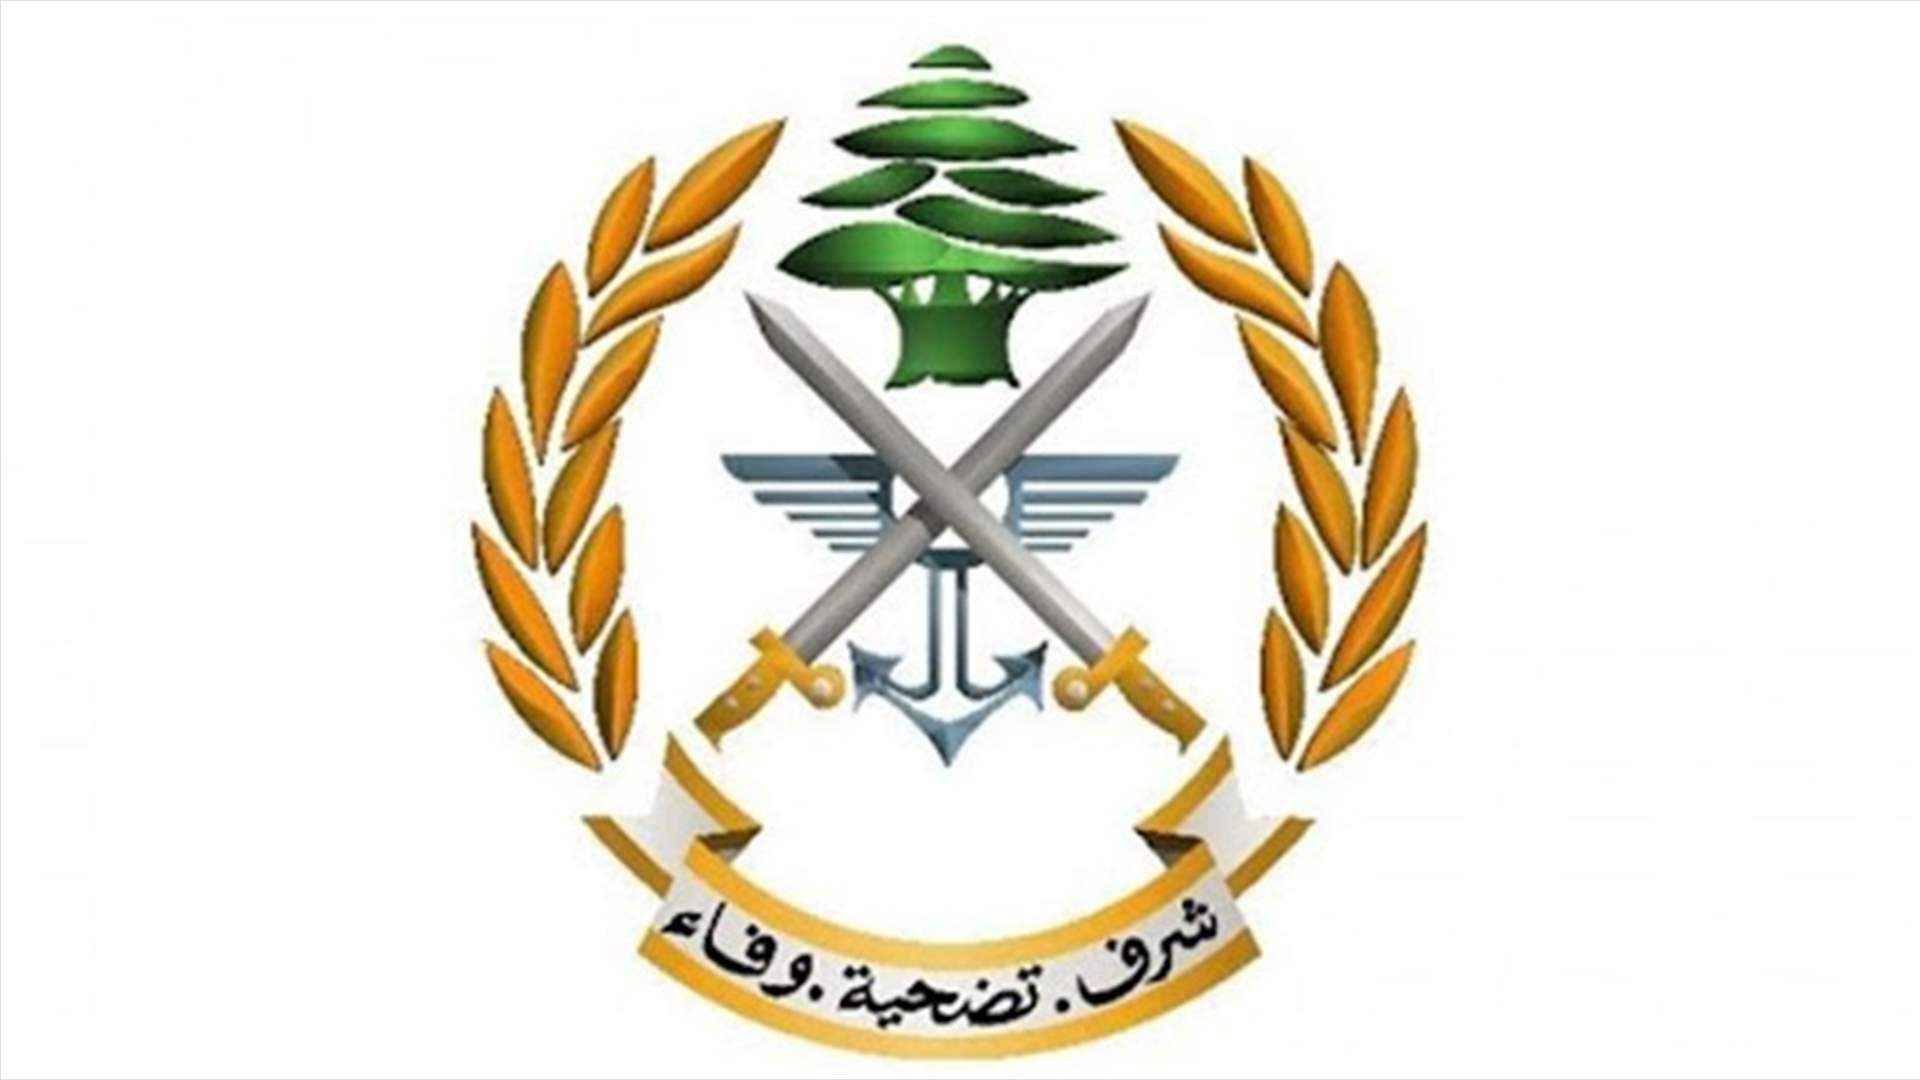 الجيش: إطلاق طلقات مدفعية خلبية خلال شهر رمضان المبارك